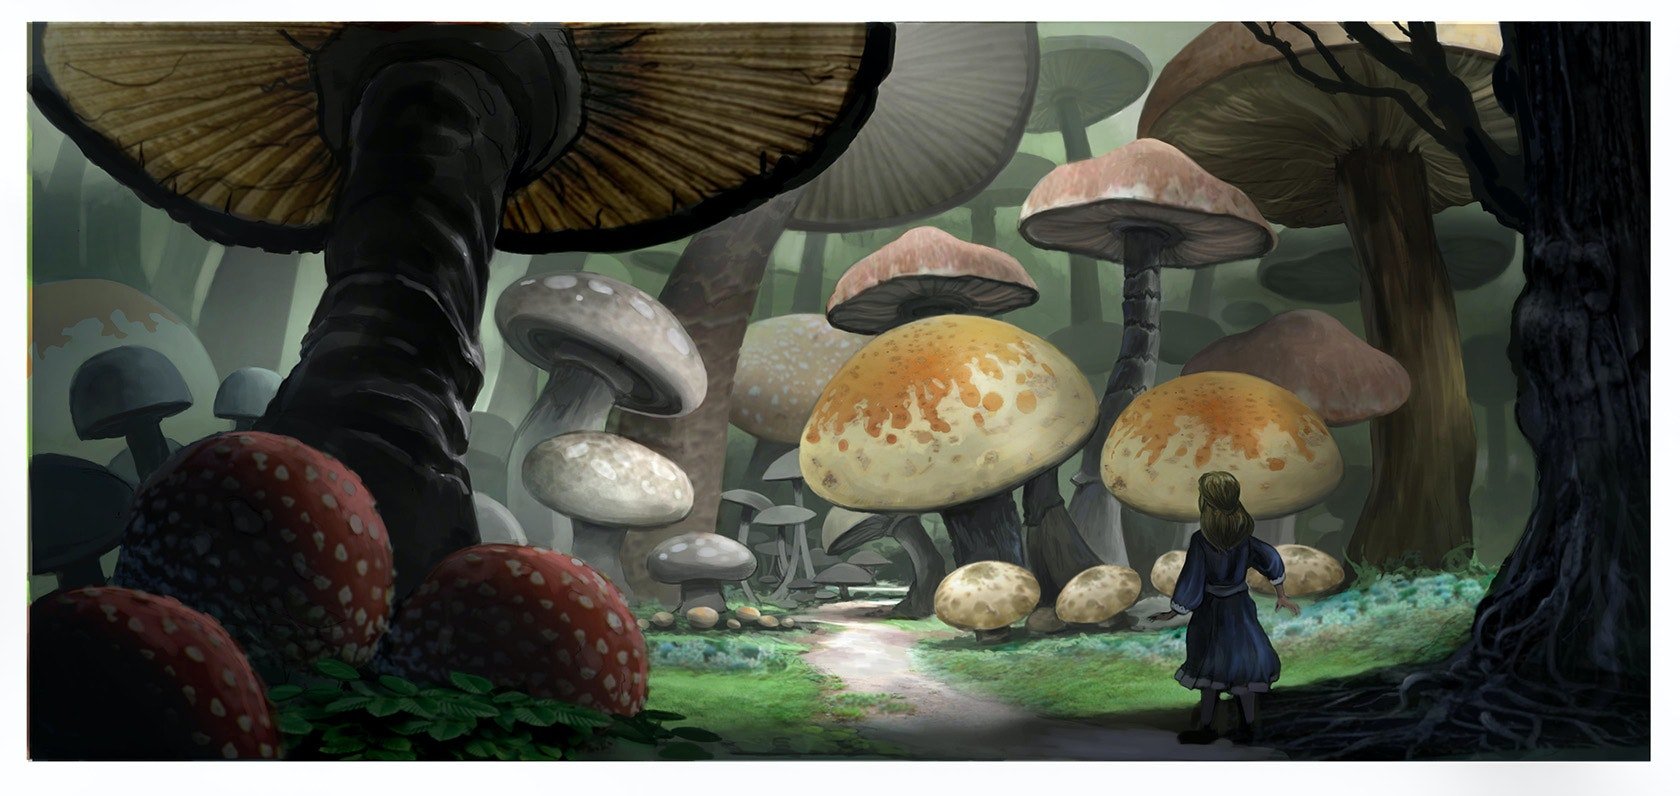 Рена грибов. Алиса в стране чудес мухомор. Алиса тим бёртон грибы. Алиса в стране чудес ест гриб.